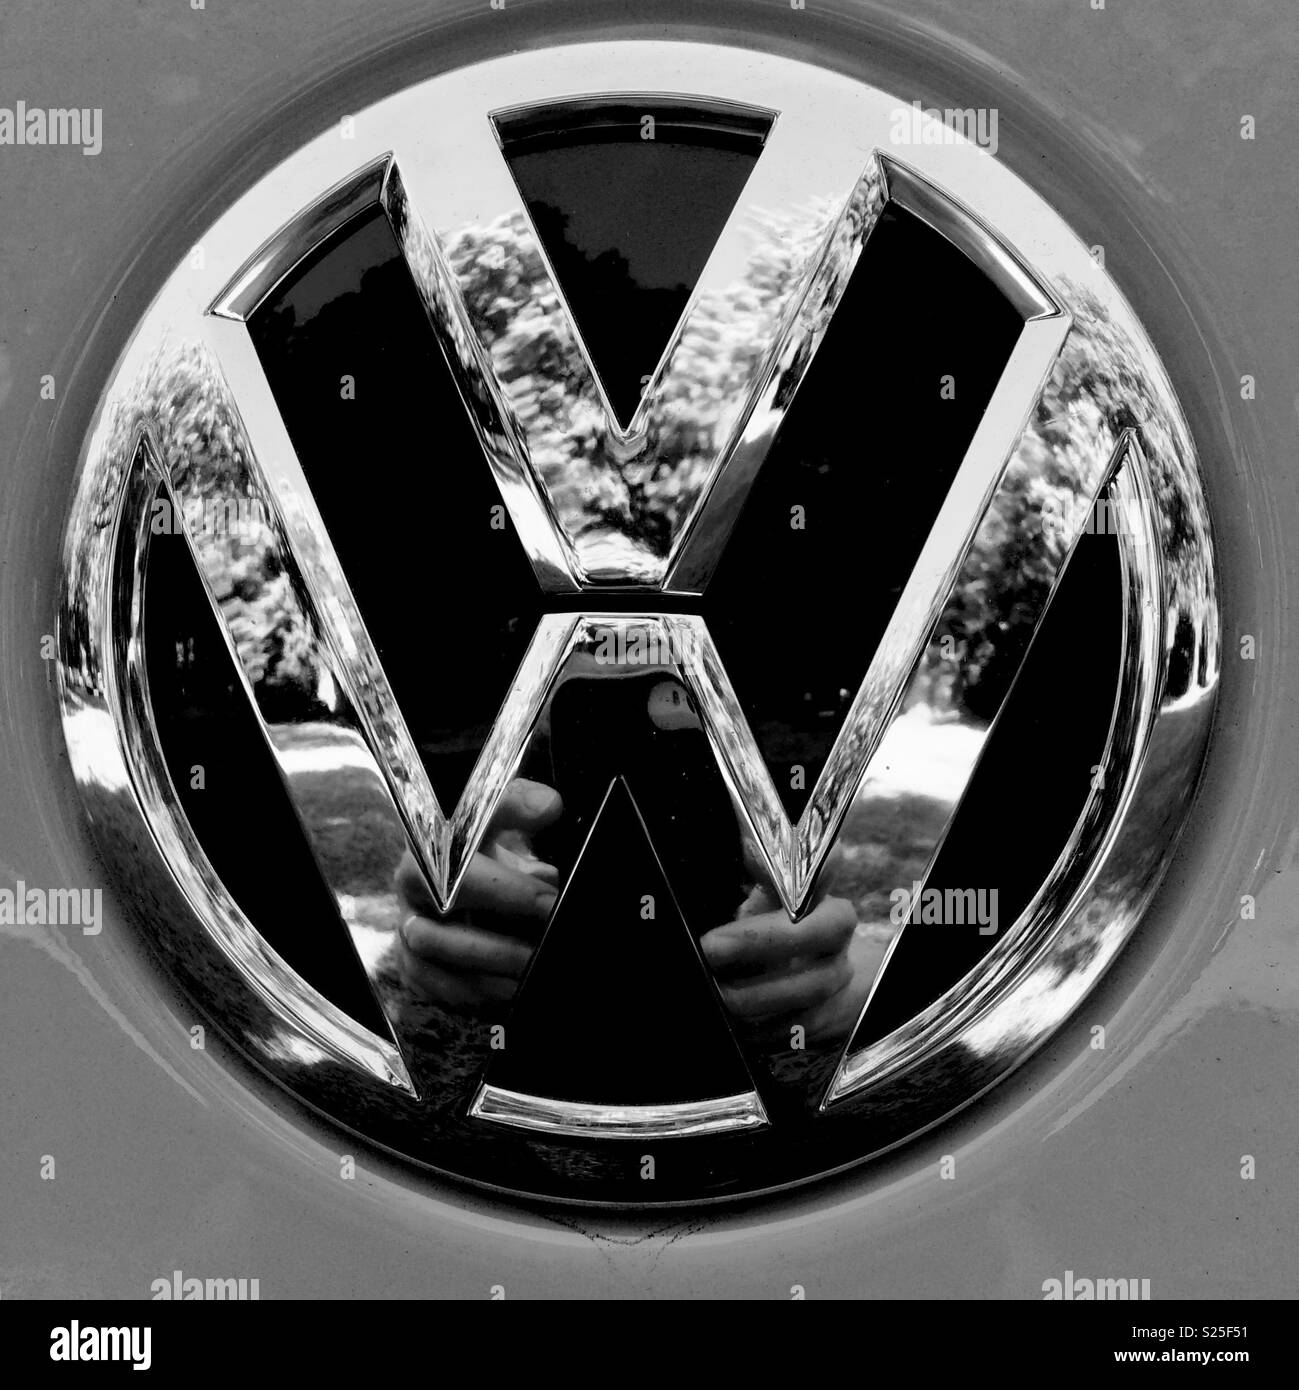 VW logo Stock Photo